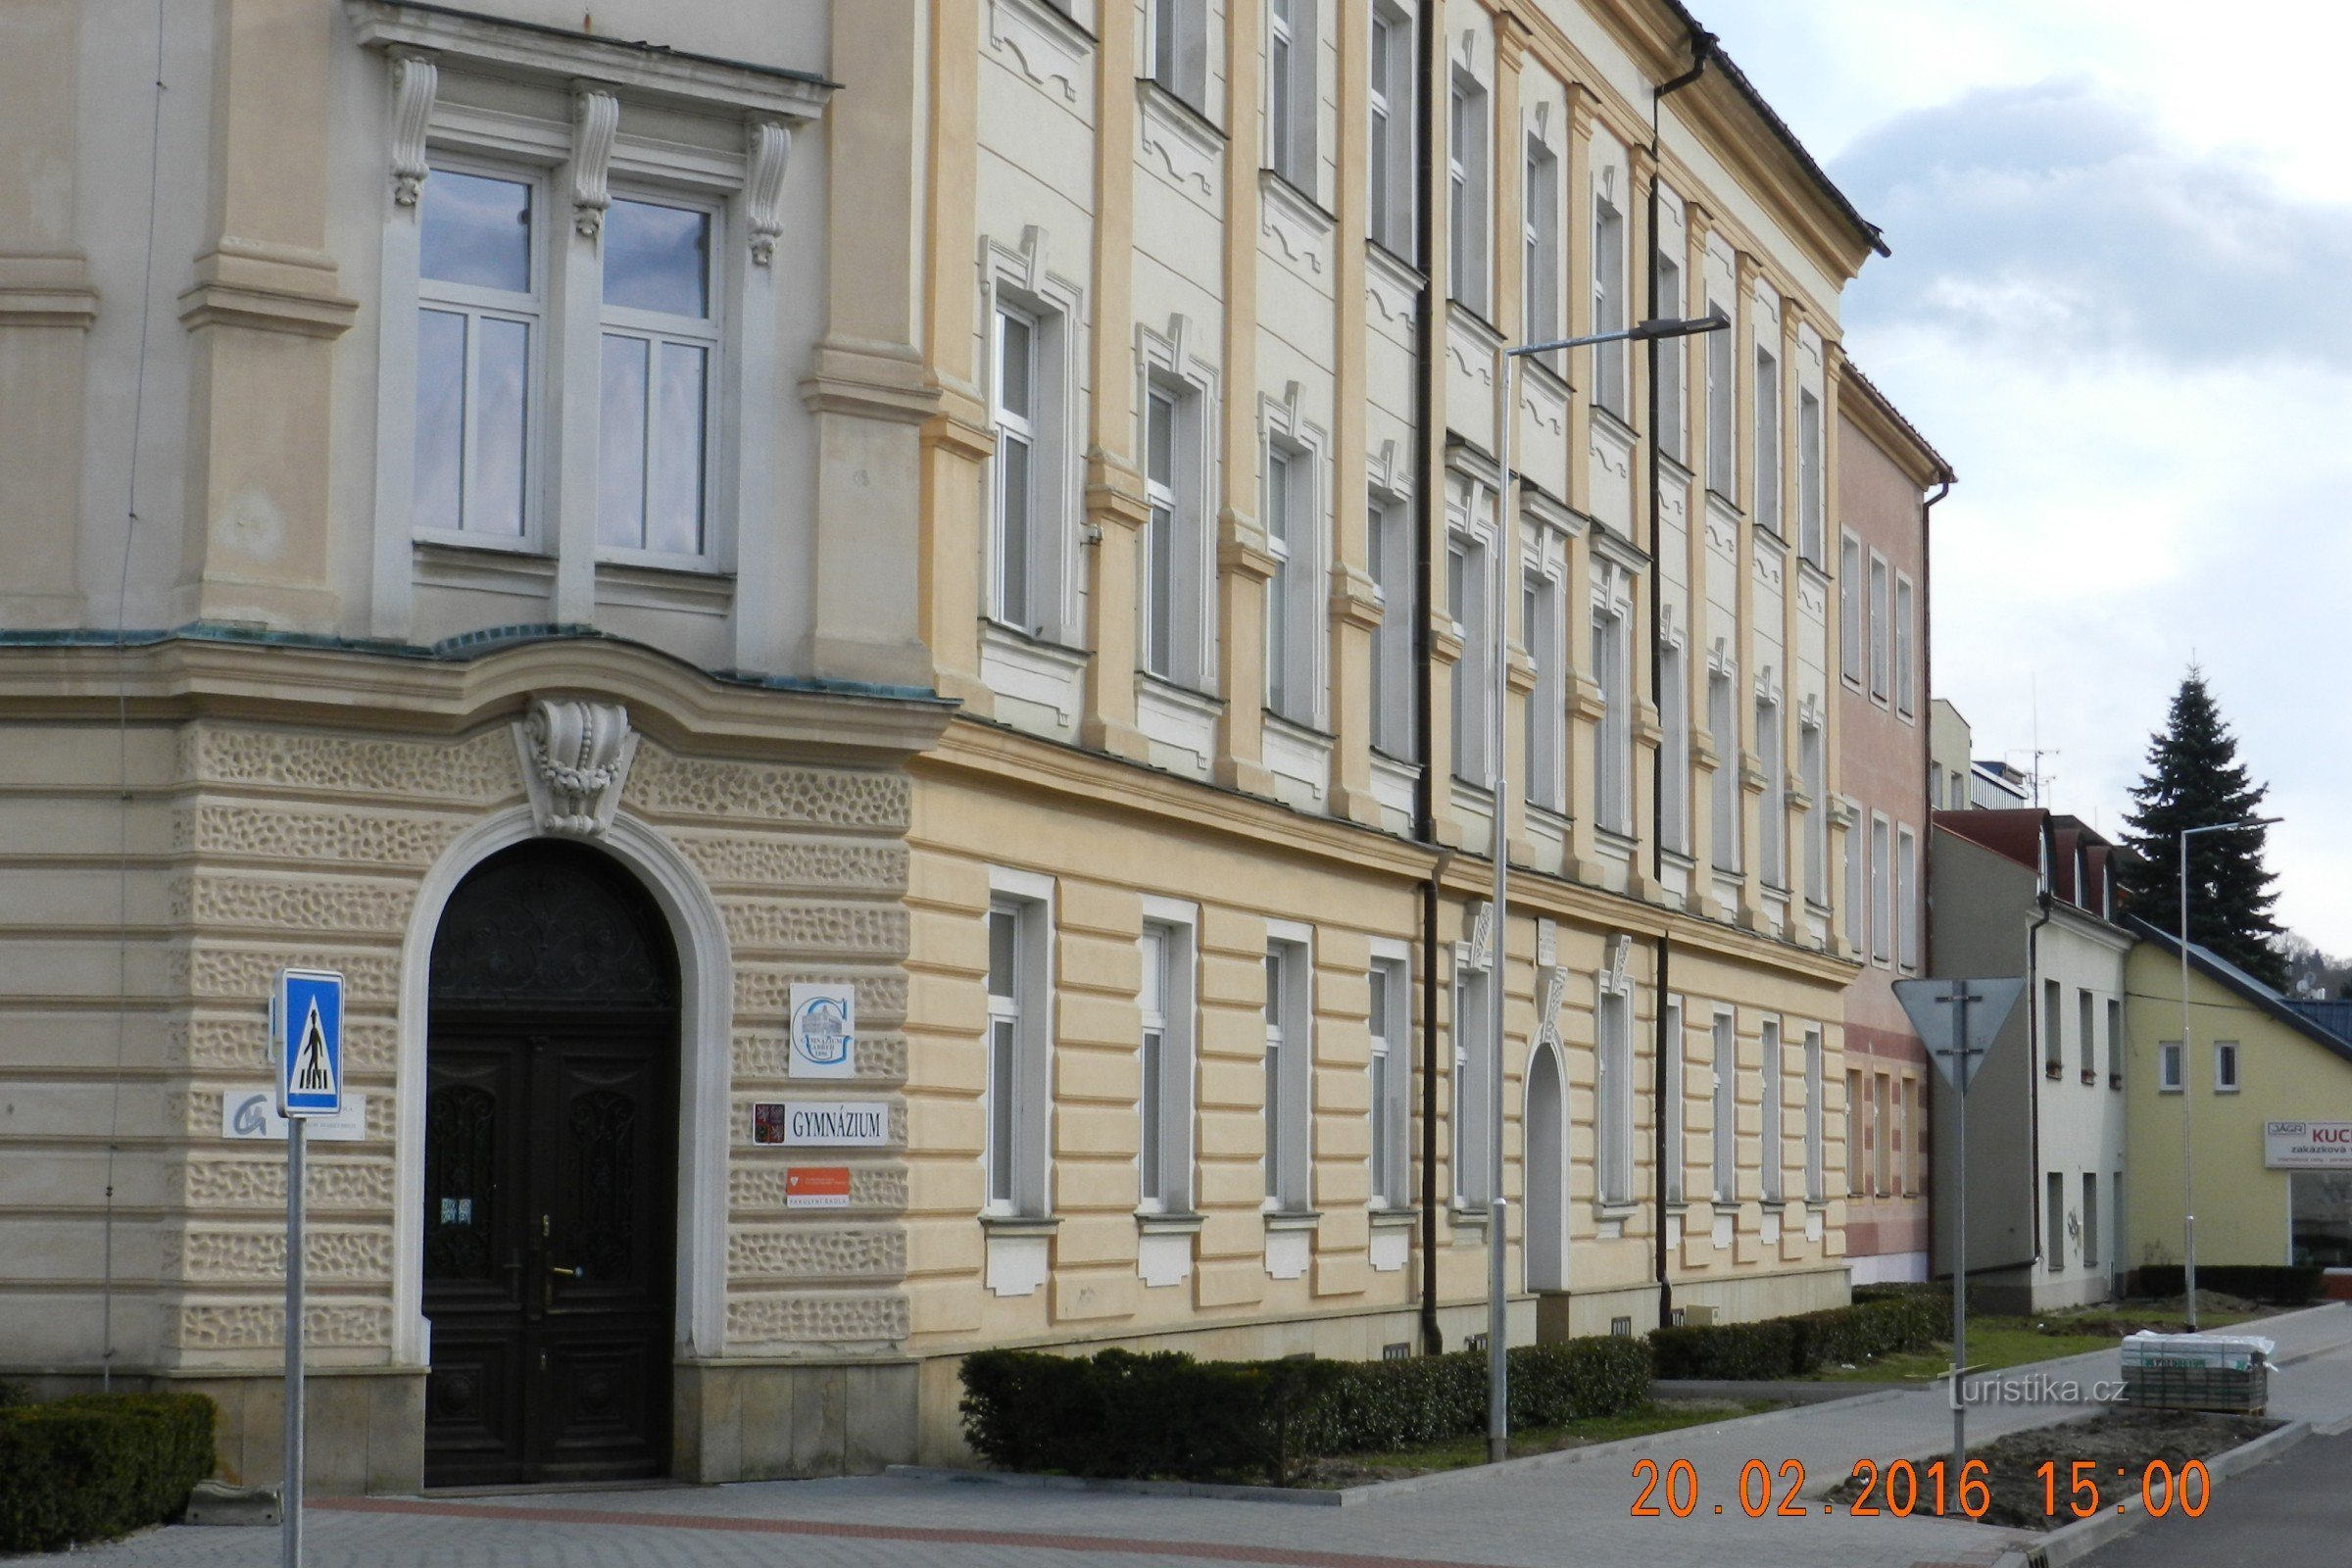 Zábřeh - stavba gimnazije - prva in najstarejša srednja šola na severozahodni Moravski